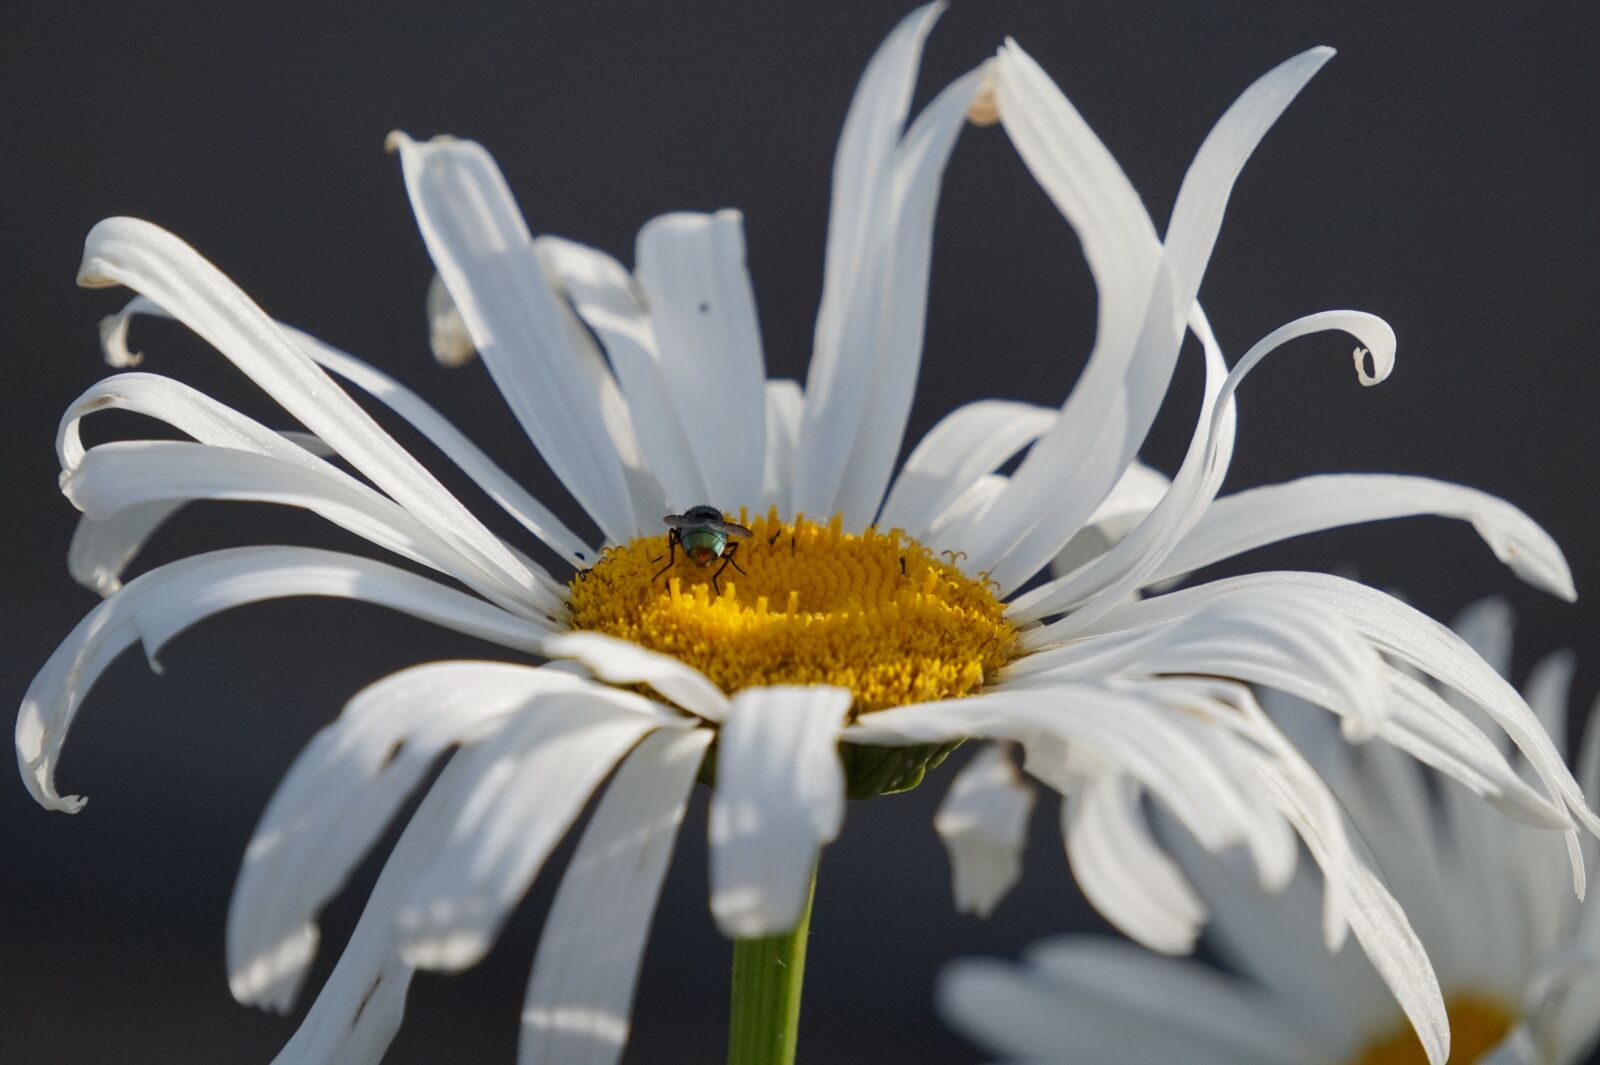 Sony Alpha a5000 (ILCE 5000) sample photo. Daisy, bee, flower photography